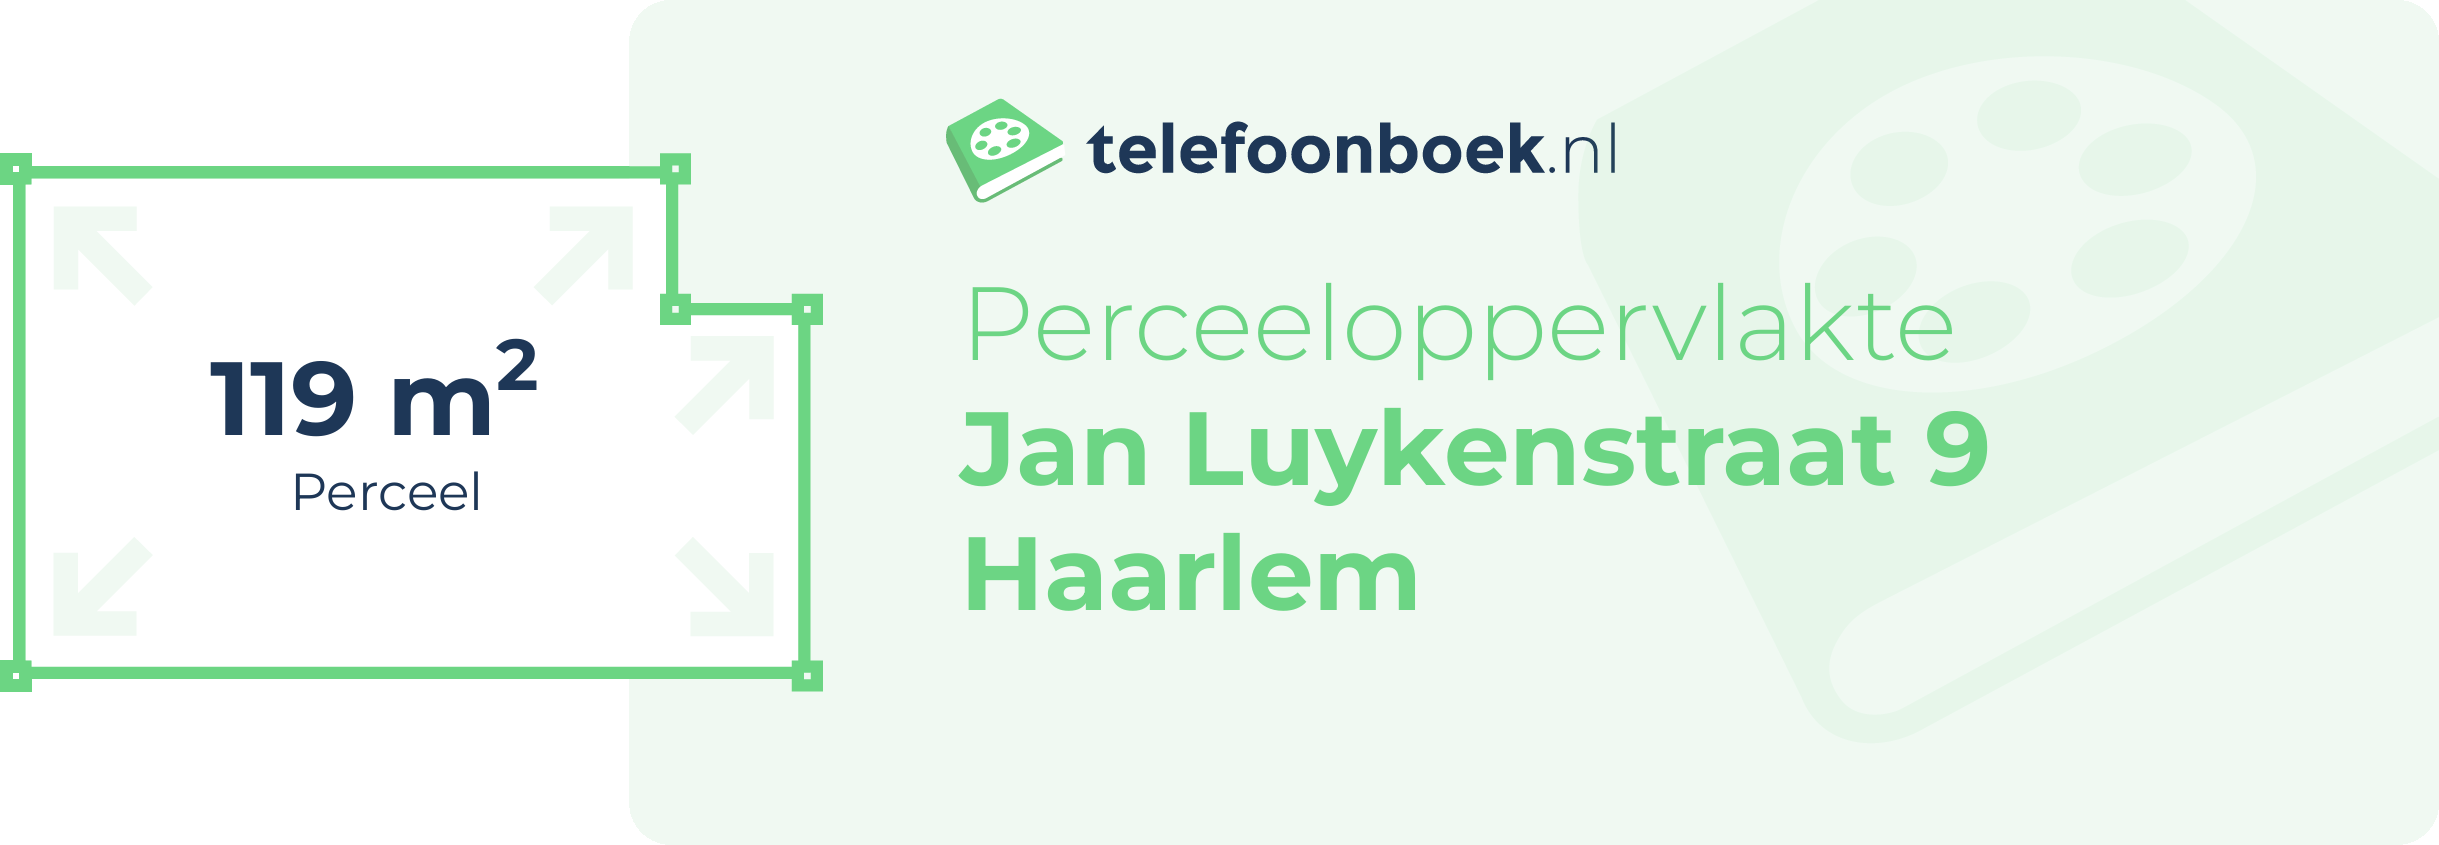 Perceeloppervlakte Jan Luykenstraat 9 Haarlem